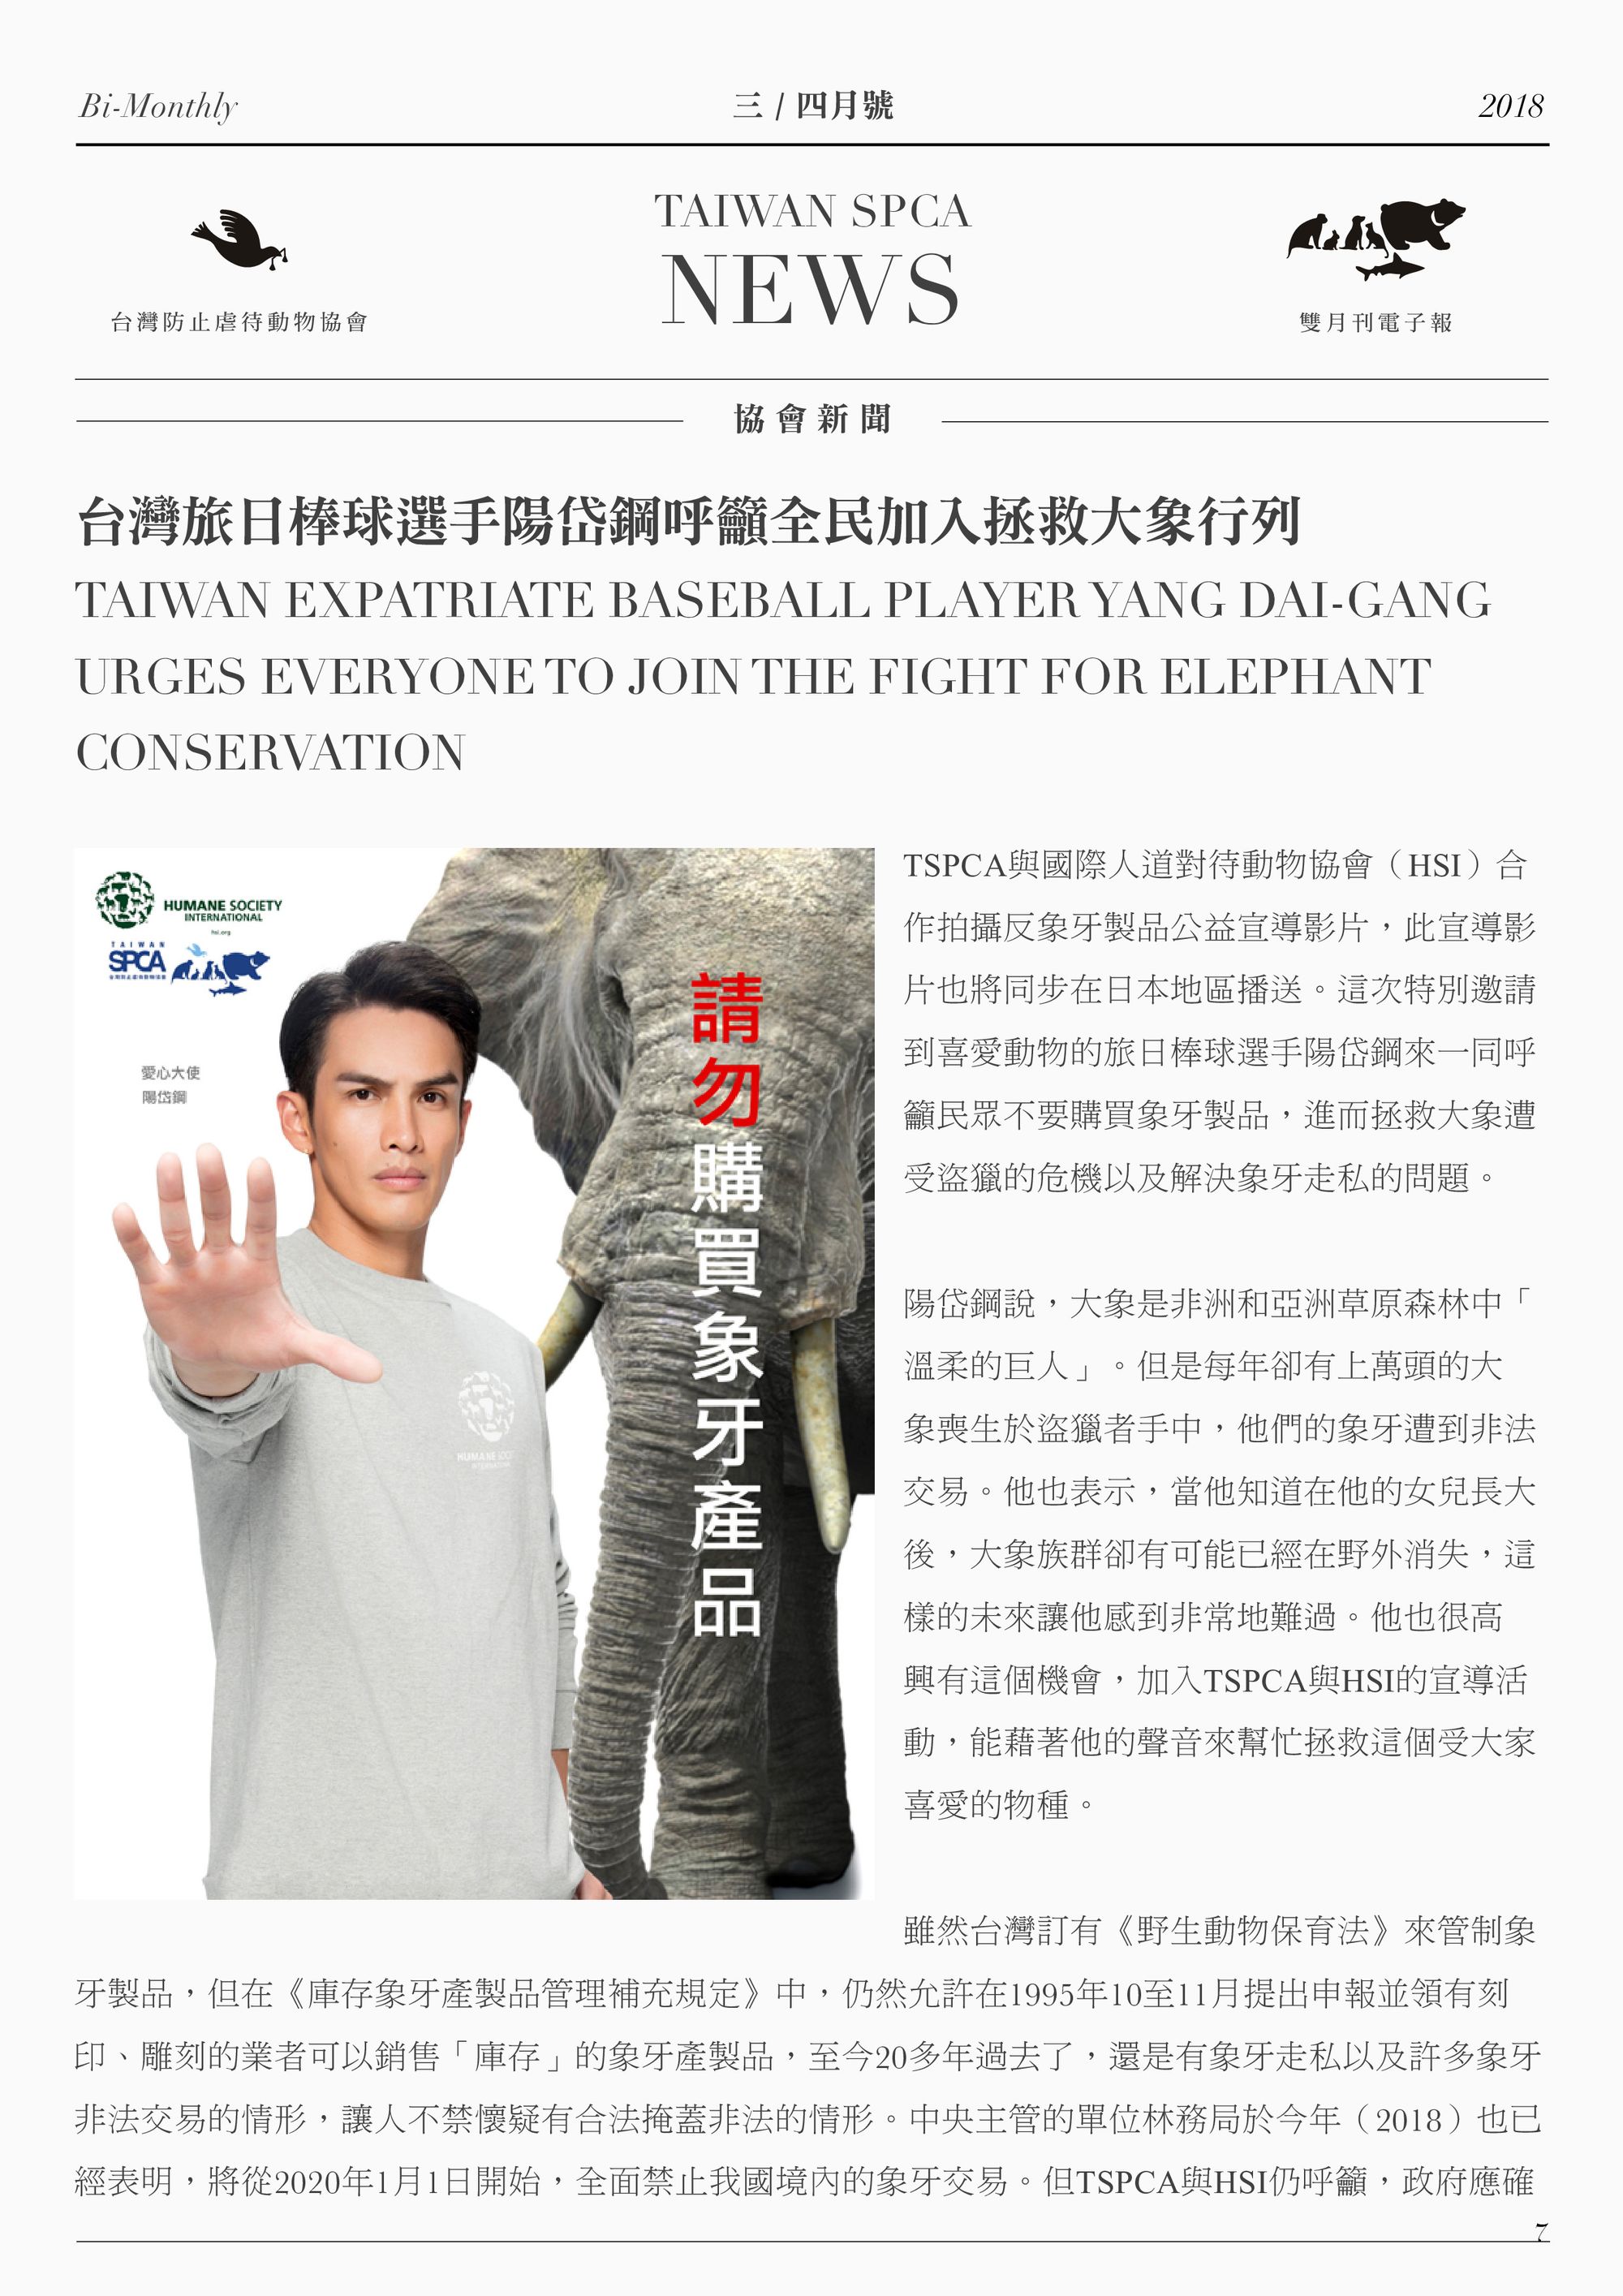 台灣旅日棒球選手陽岱鋼呼籲全民加入拯救大象行列